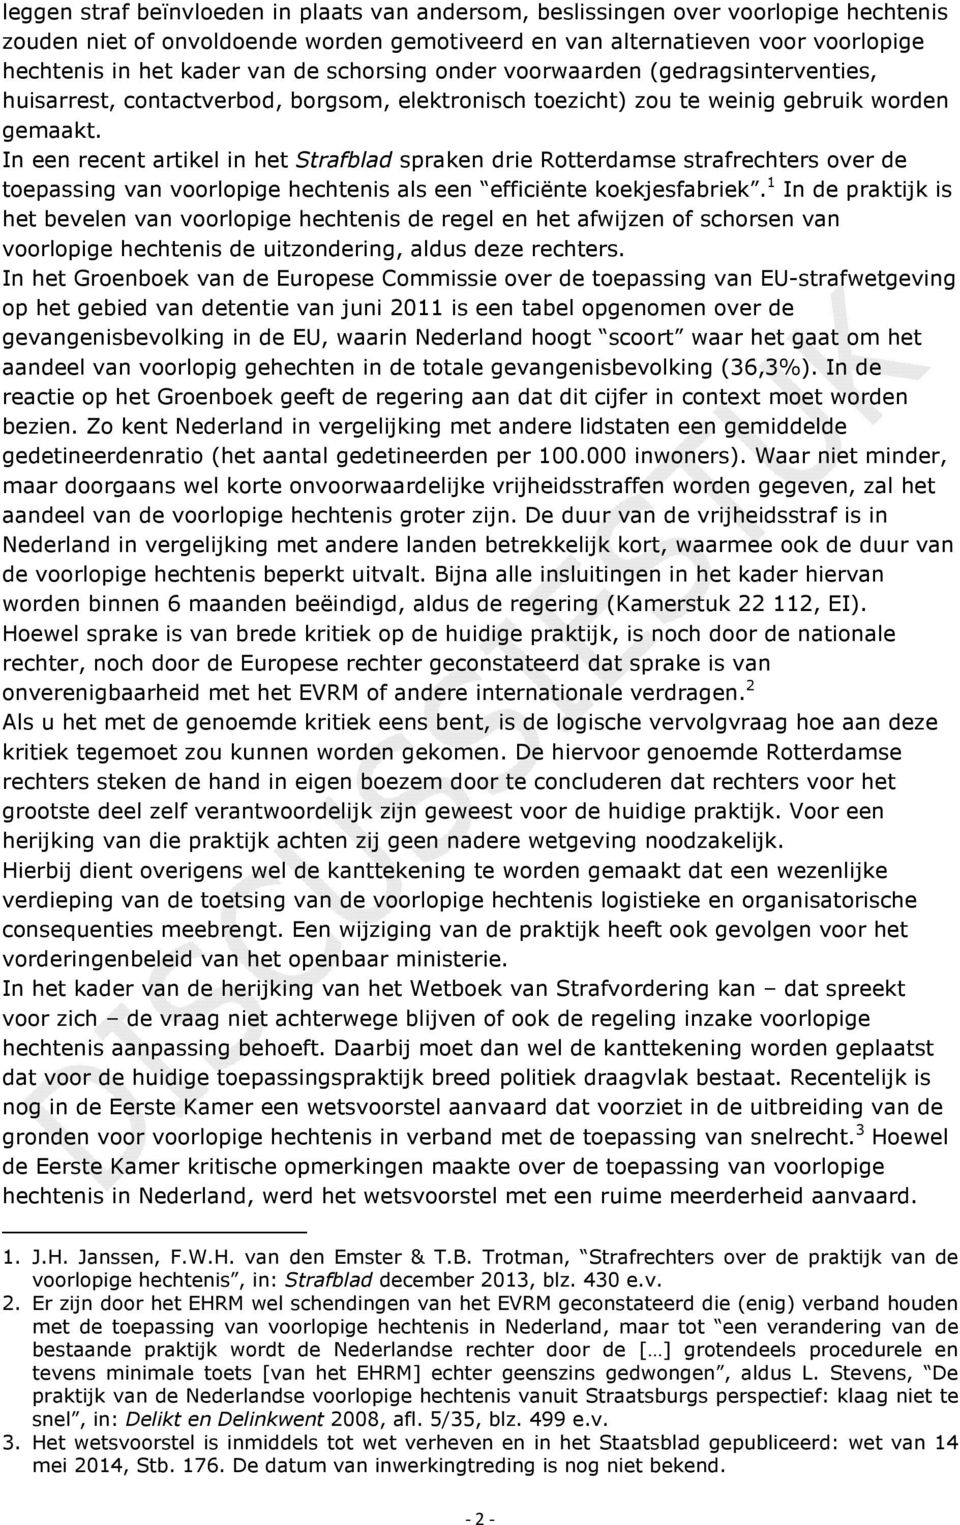 In een recent artikel in het Strafblad spraken drie Rotterdamse strafrechters over de toepassing van voorlopige hechtenis als een efficiënte koekjesfabriek.